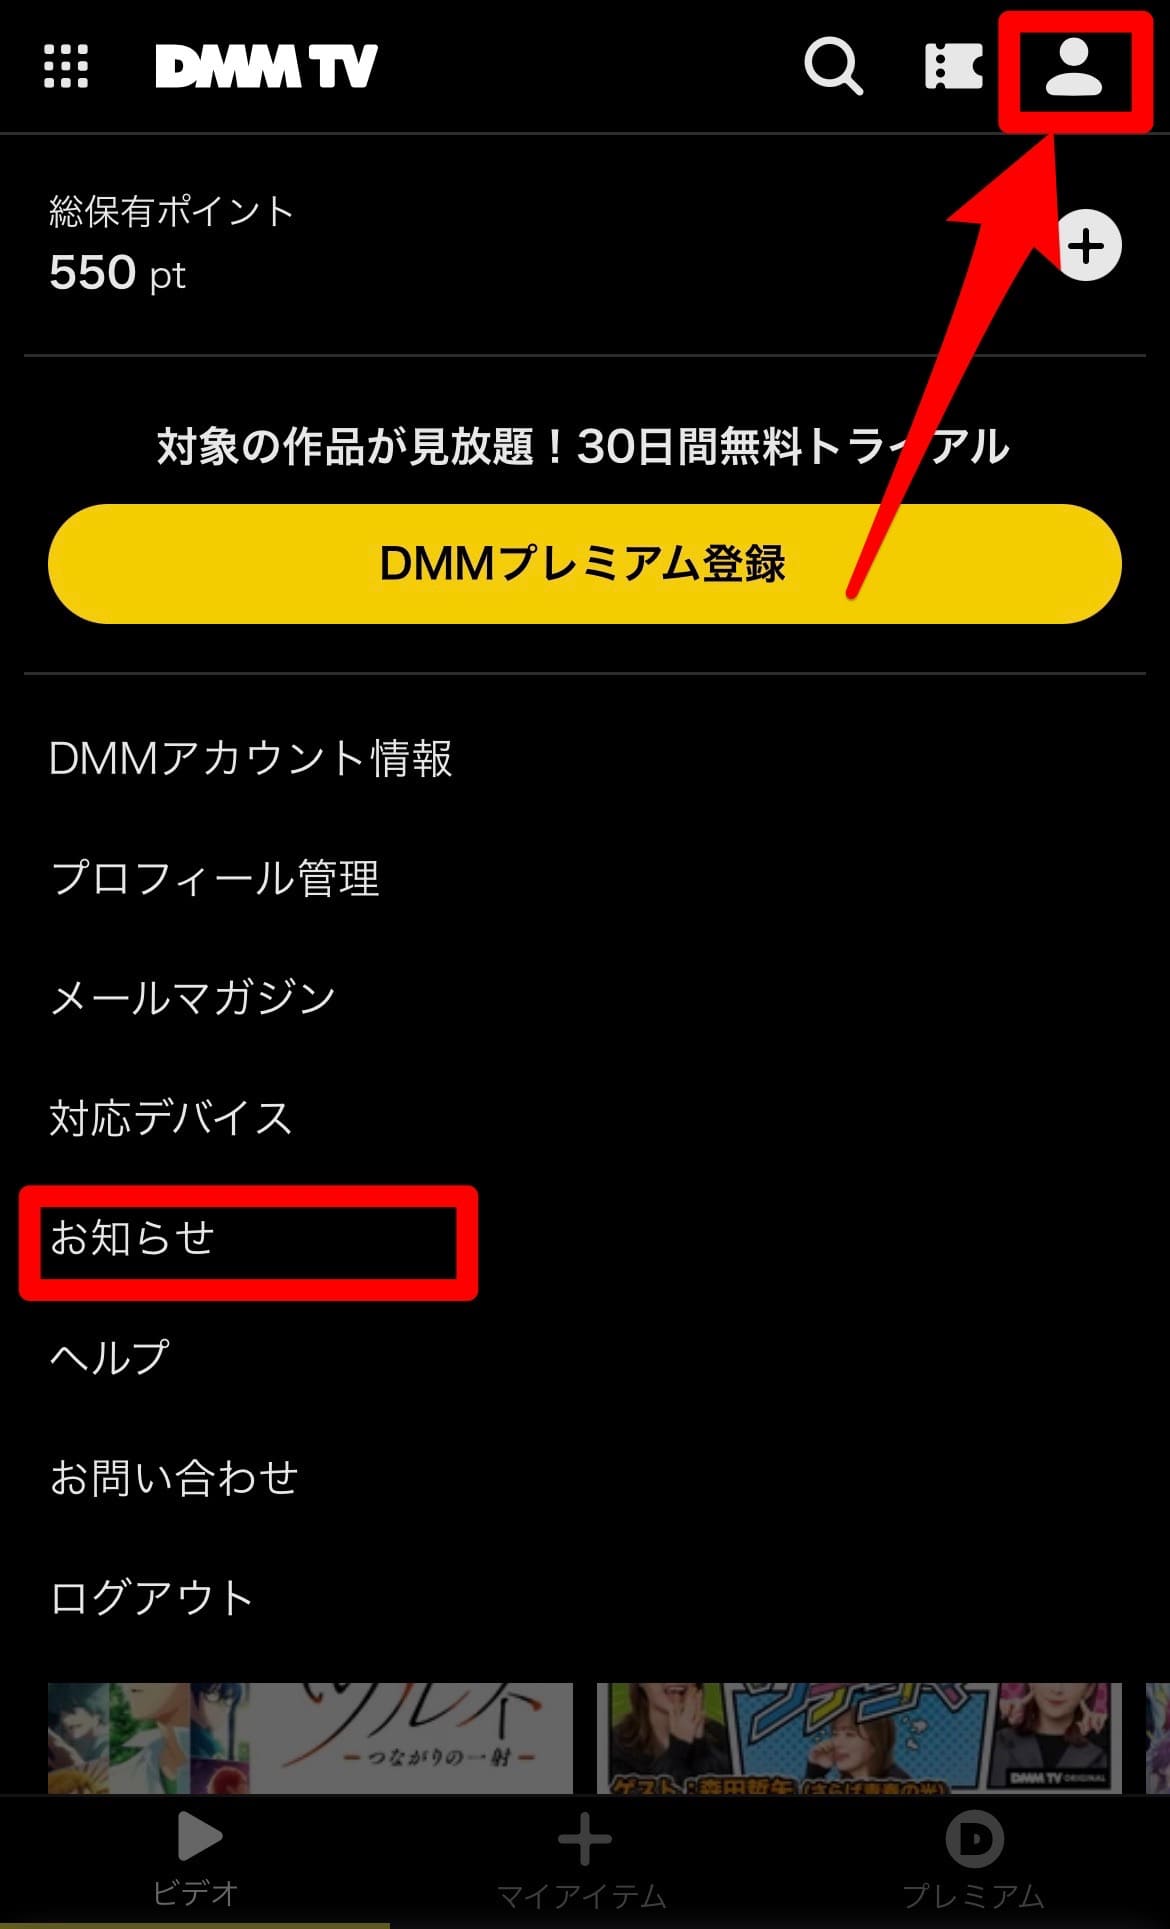 DMMTV お知らせ